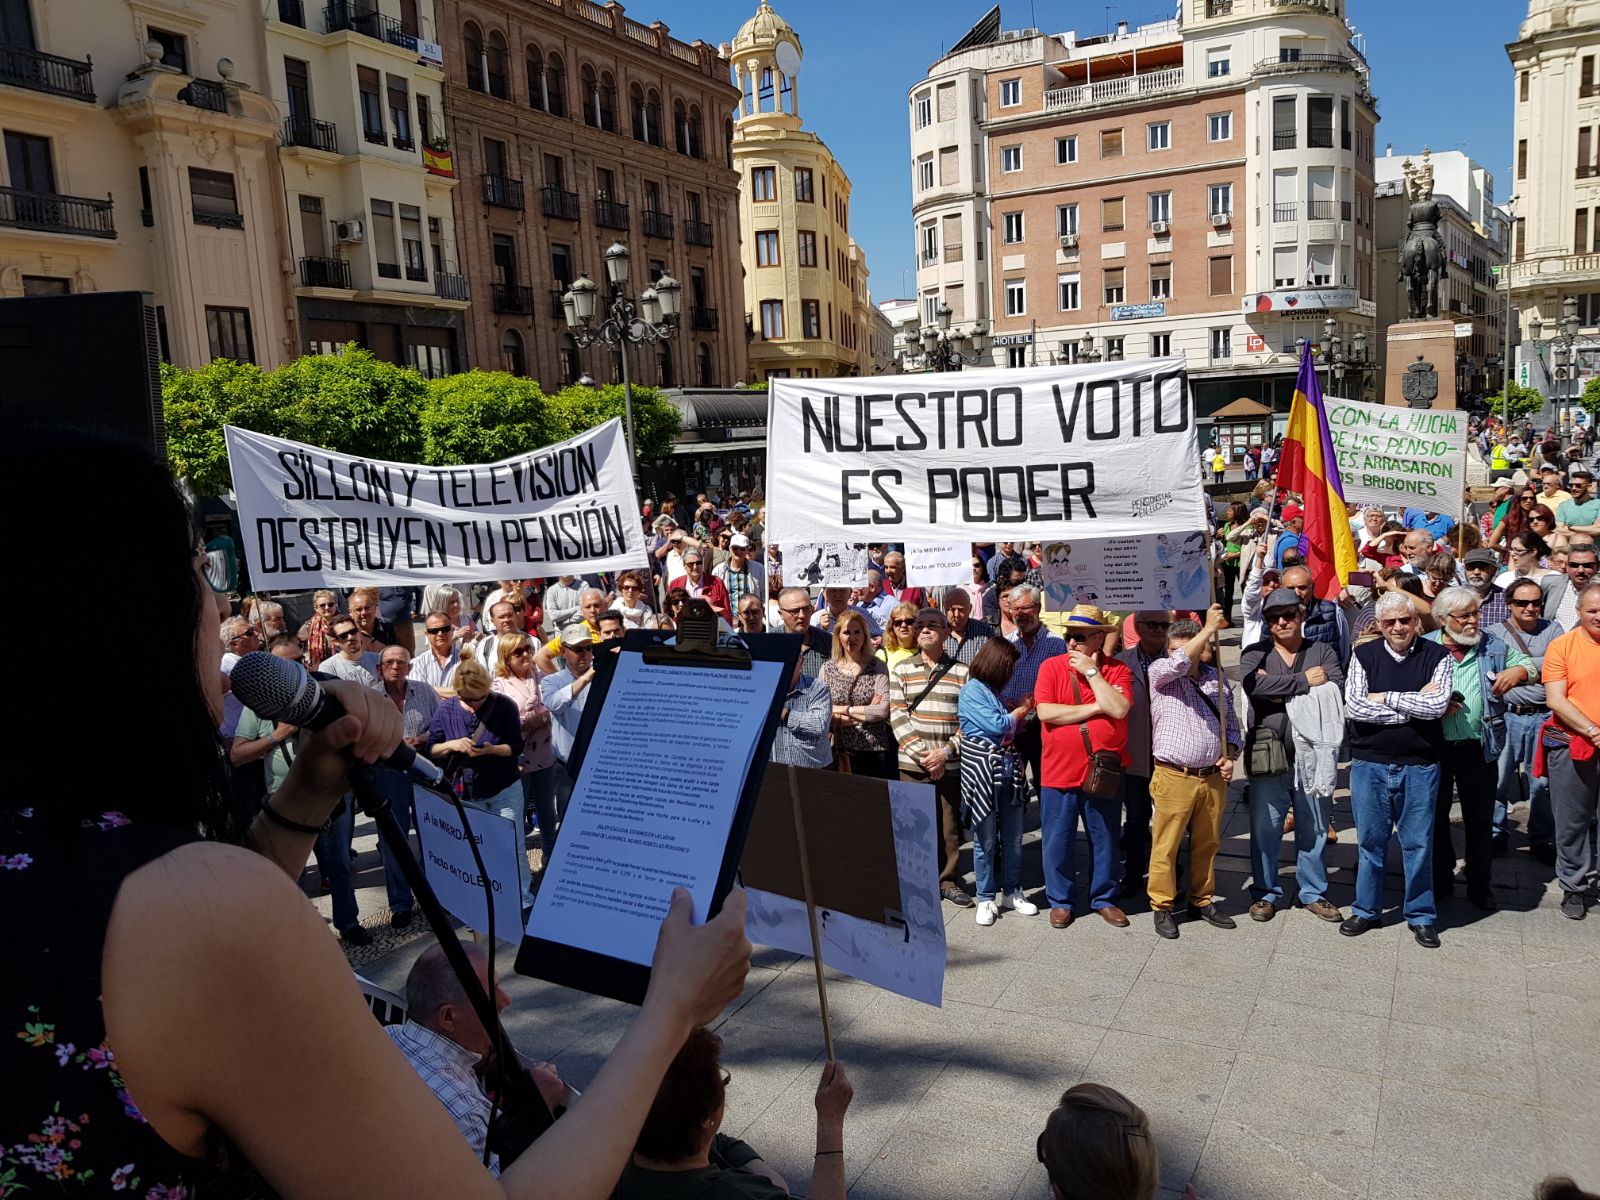 Nueva manifestación “intergeneracional” en defensa del sistema público de pensiones en Córdoba: “los pensionistas y la sociedad no van a conformarse con cesiones puntuales”